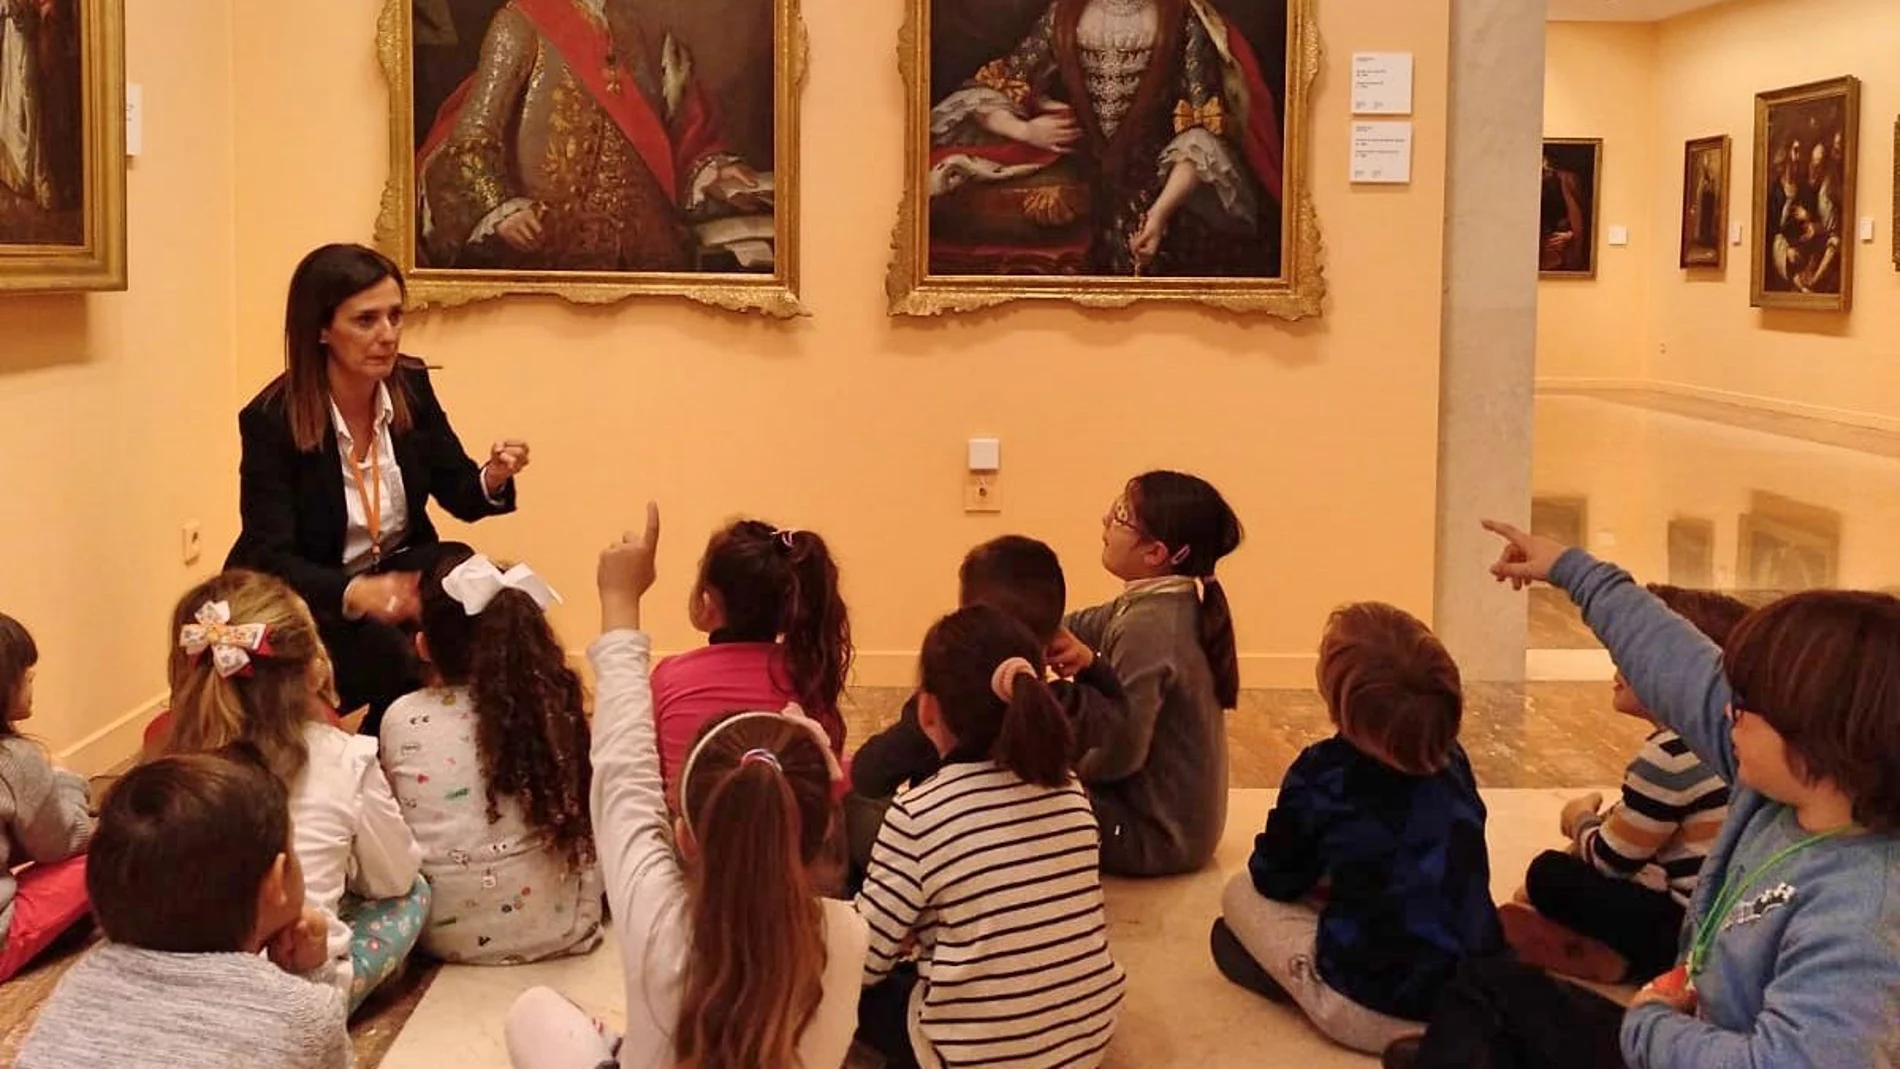 Los niños de 8 a 10 años podrán pasar una noche entera en los museos acompañados de varios actores que les guiarán a través de un recorrido con actividades que fomenten la imaginación y la creatividad de los pequeños. LA RAZÓN